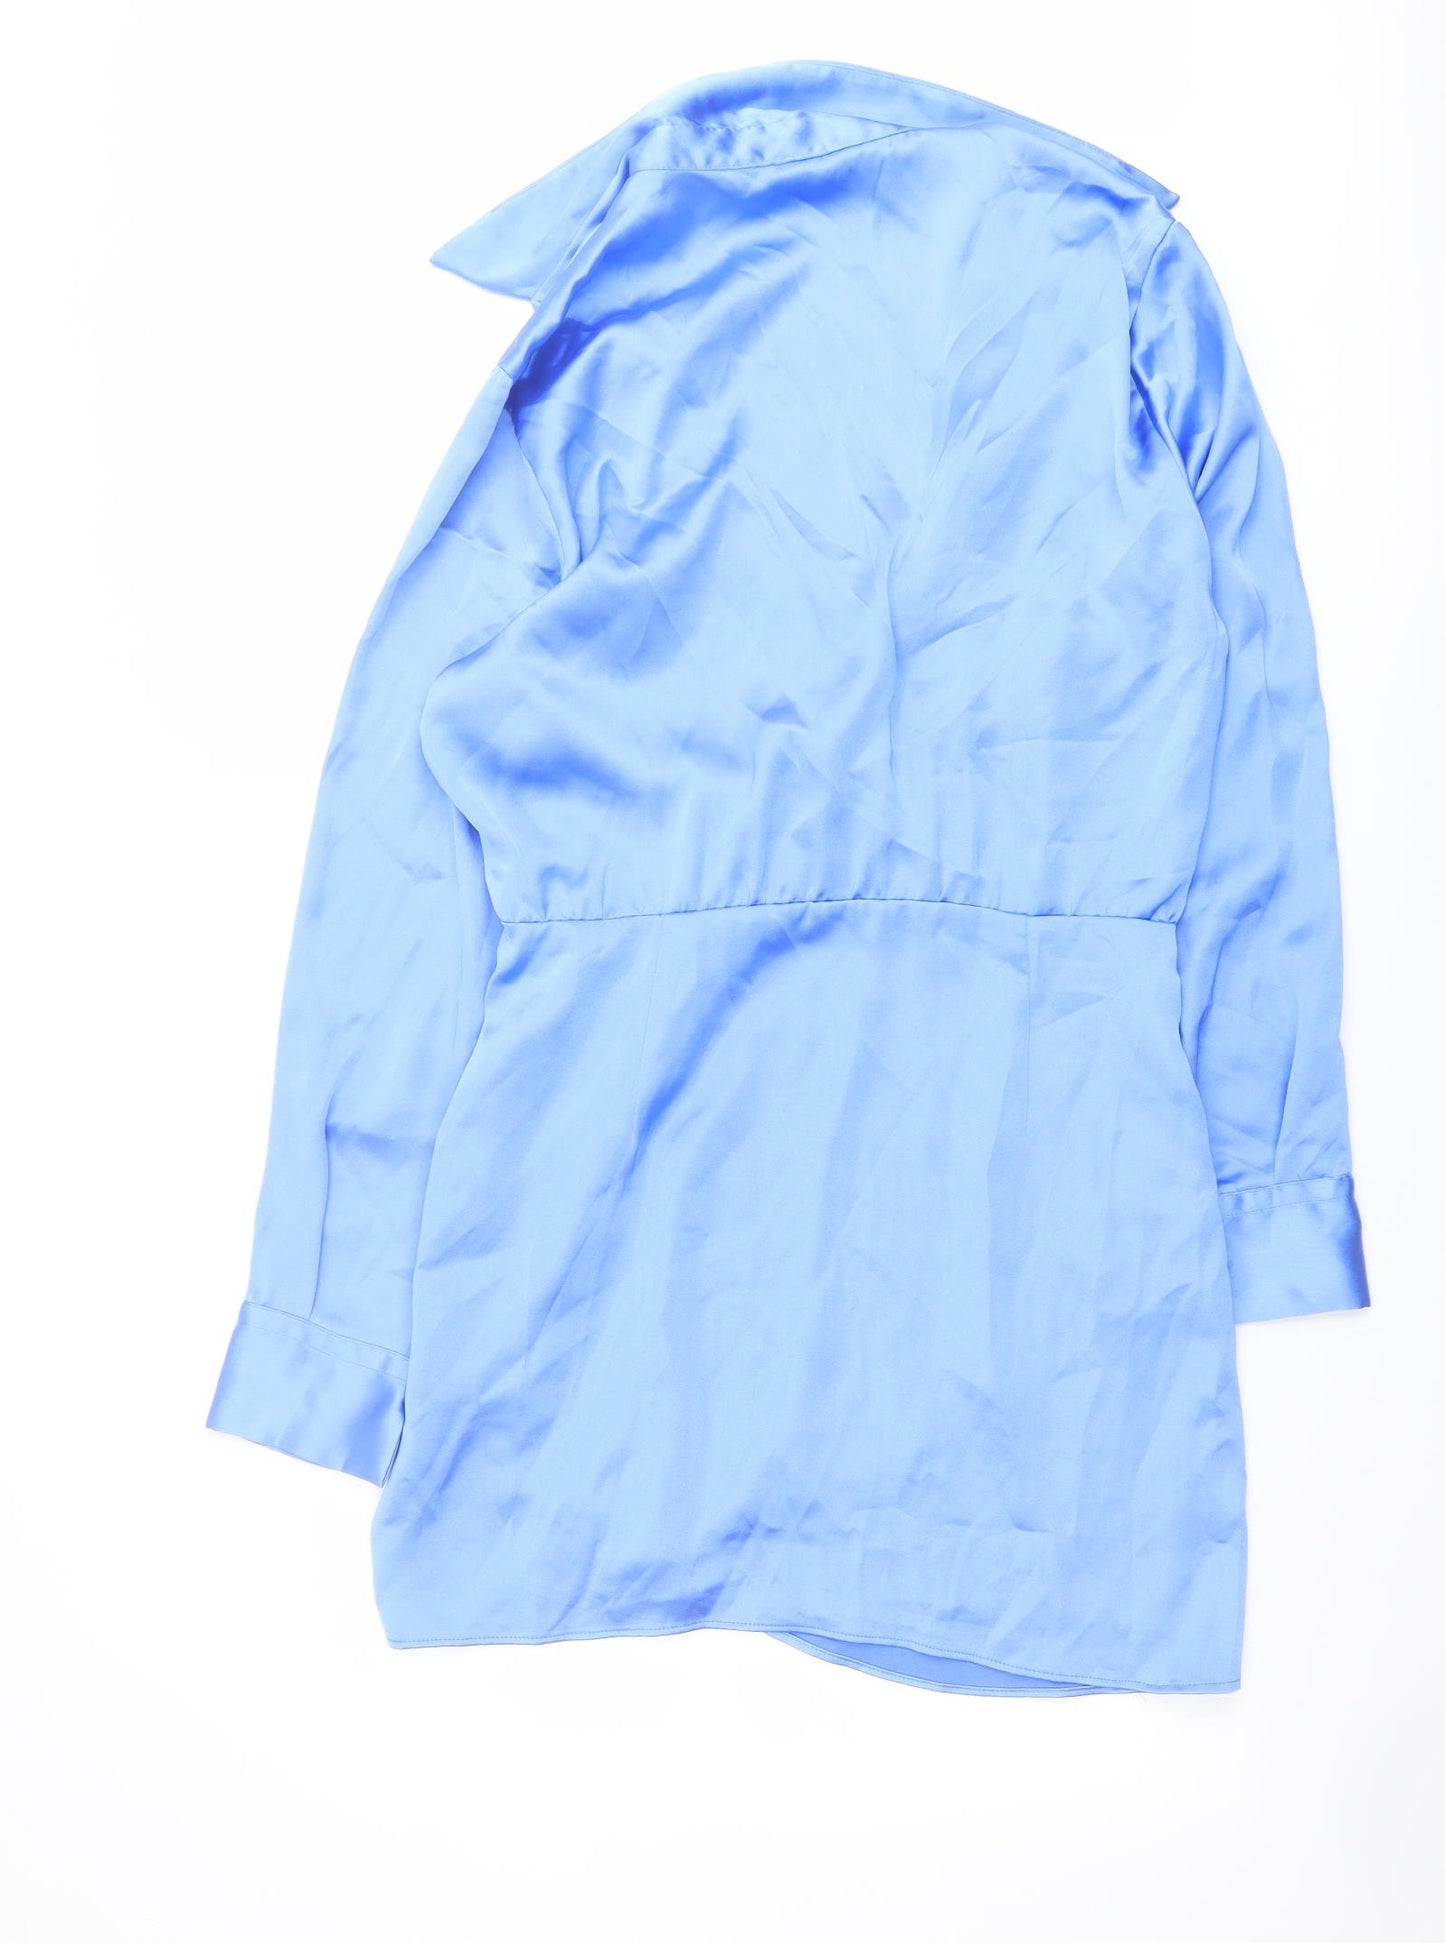 Zara Womens Blue Polyester Shirt Dress Size L Collared Zip